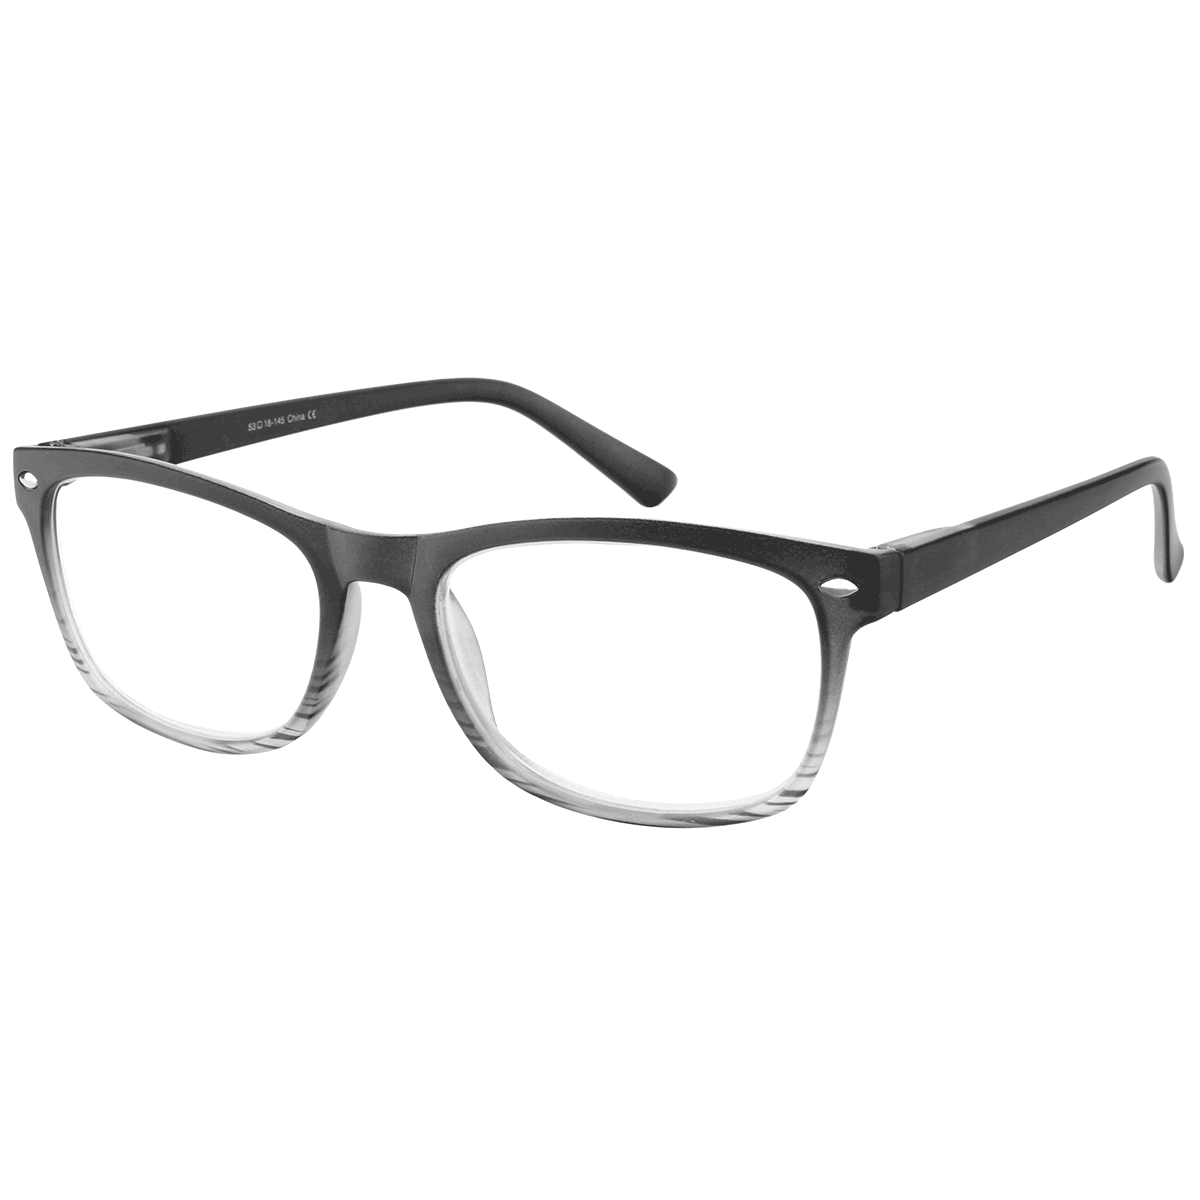 Bias - Square Black Reading Glasses for Men & Women